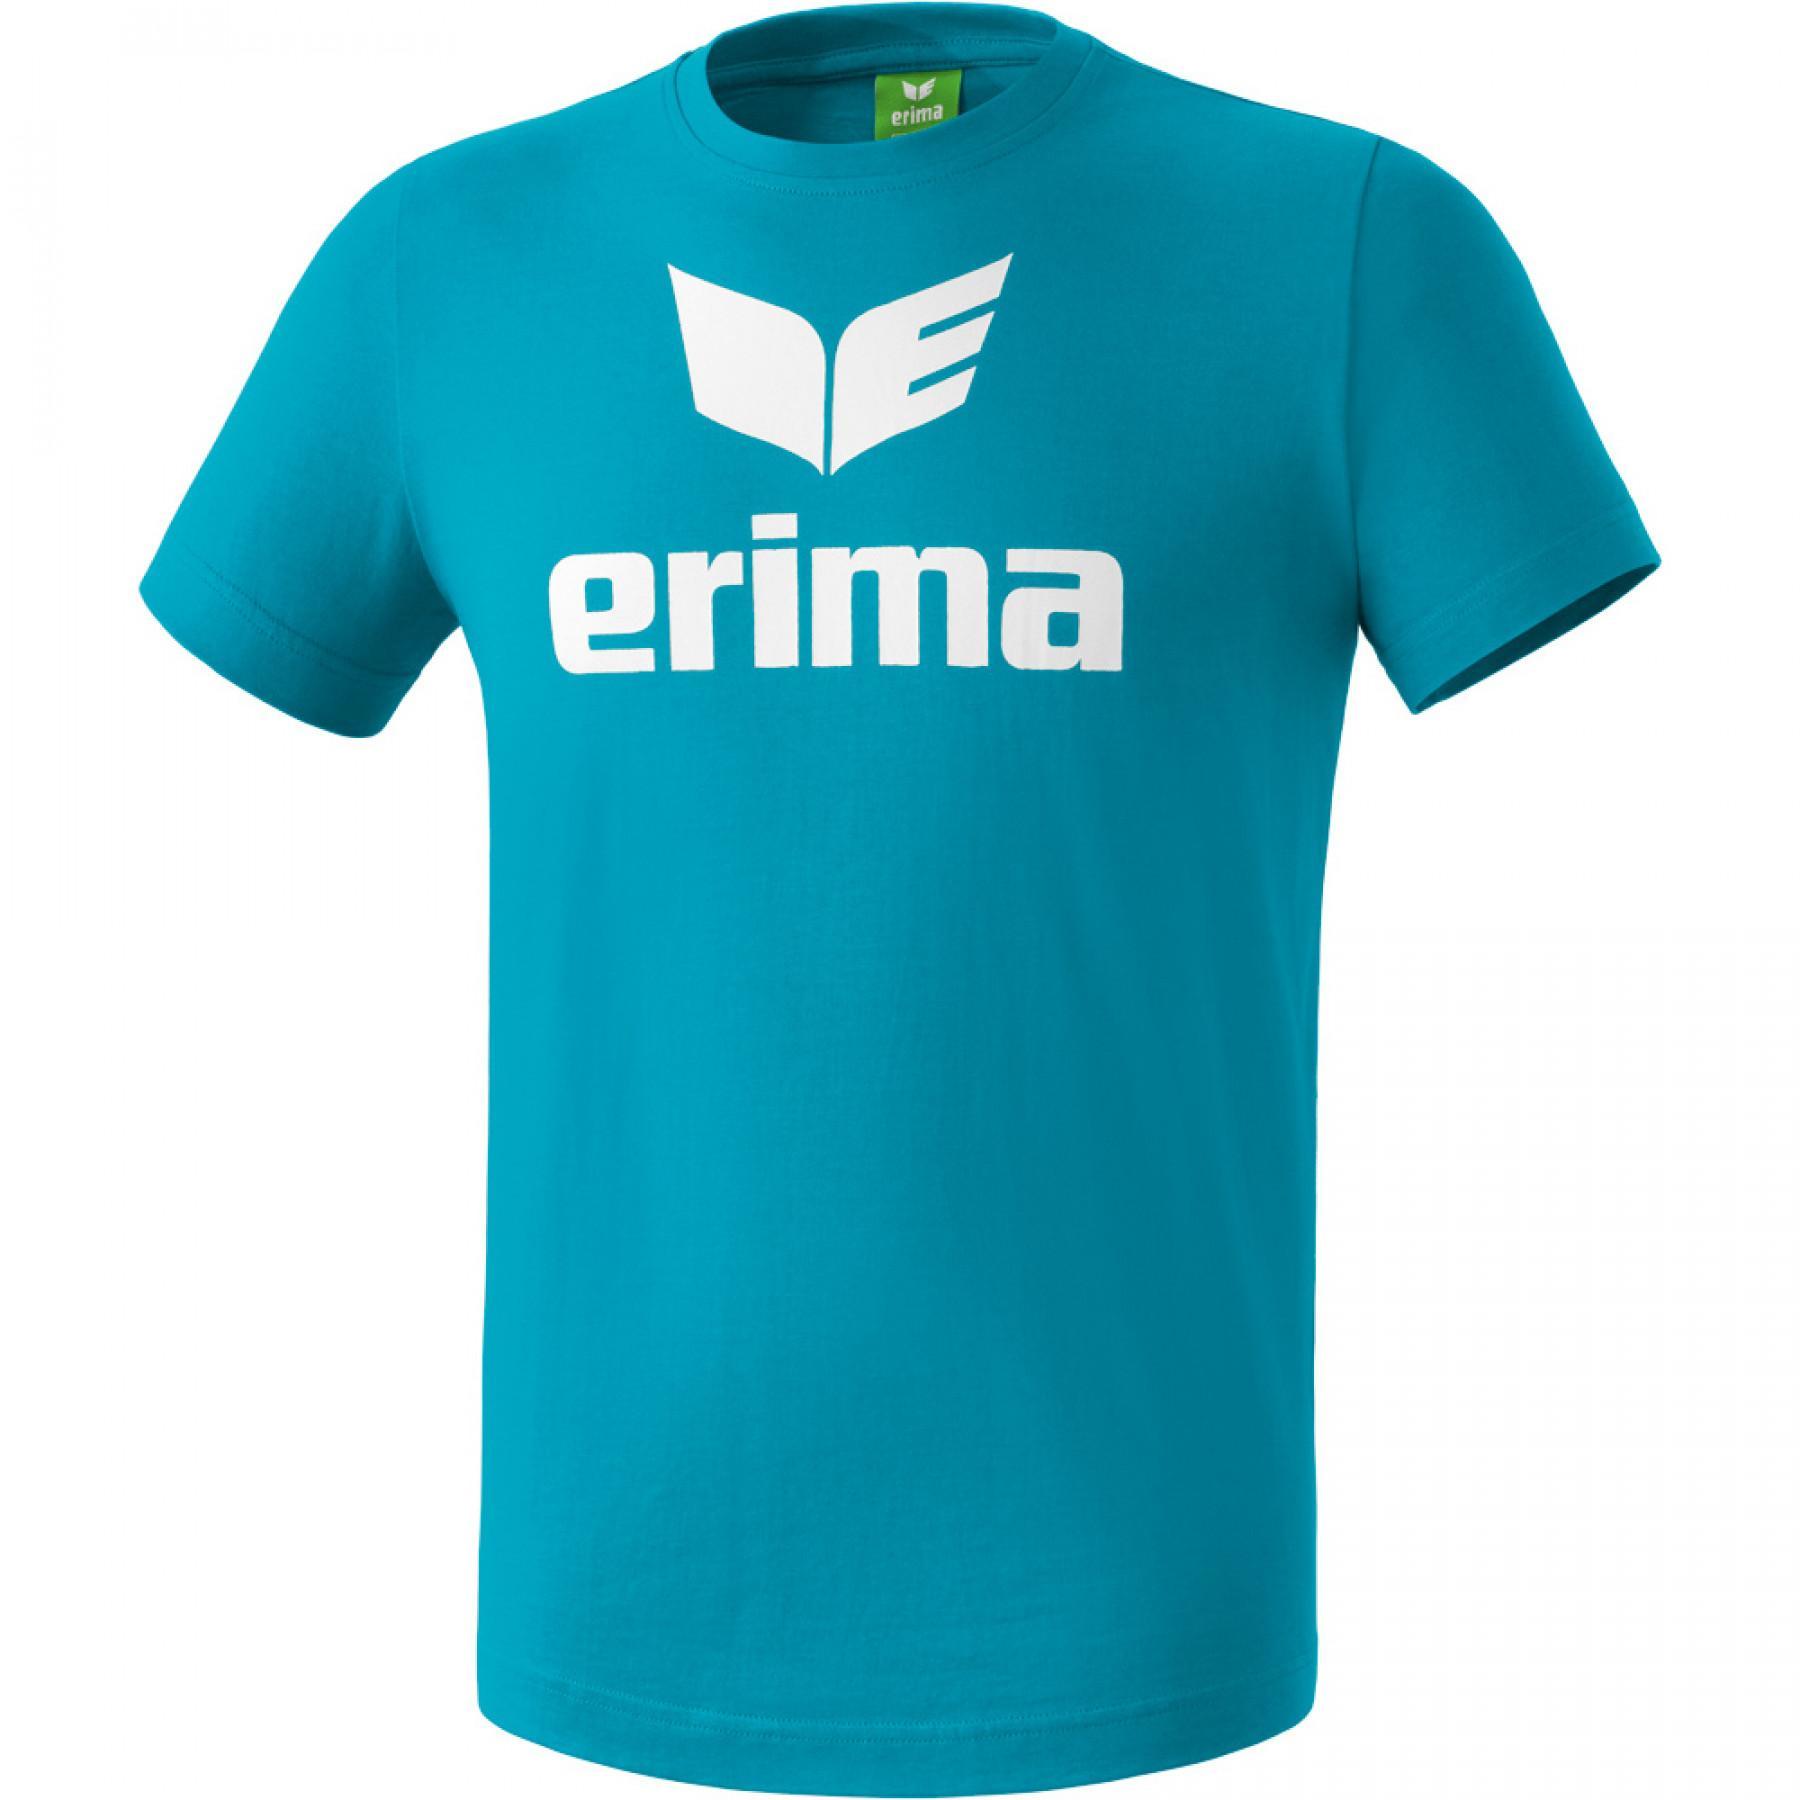 T-shirt criança Erima Promo